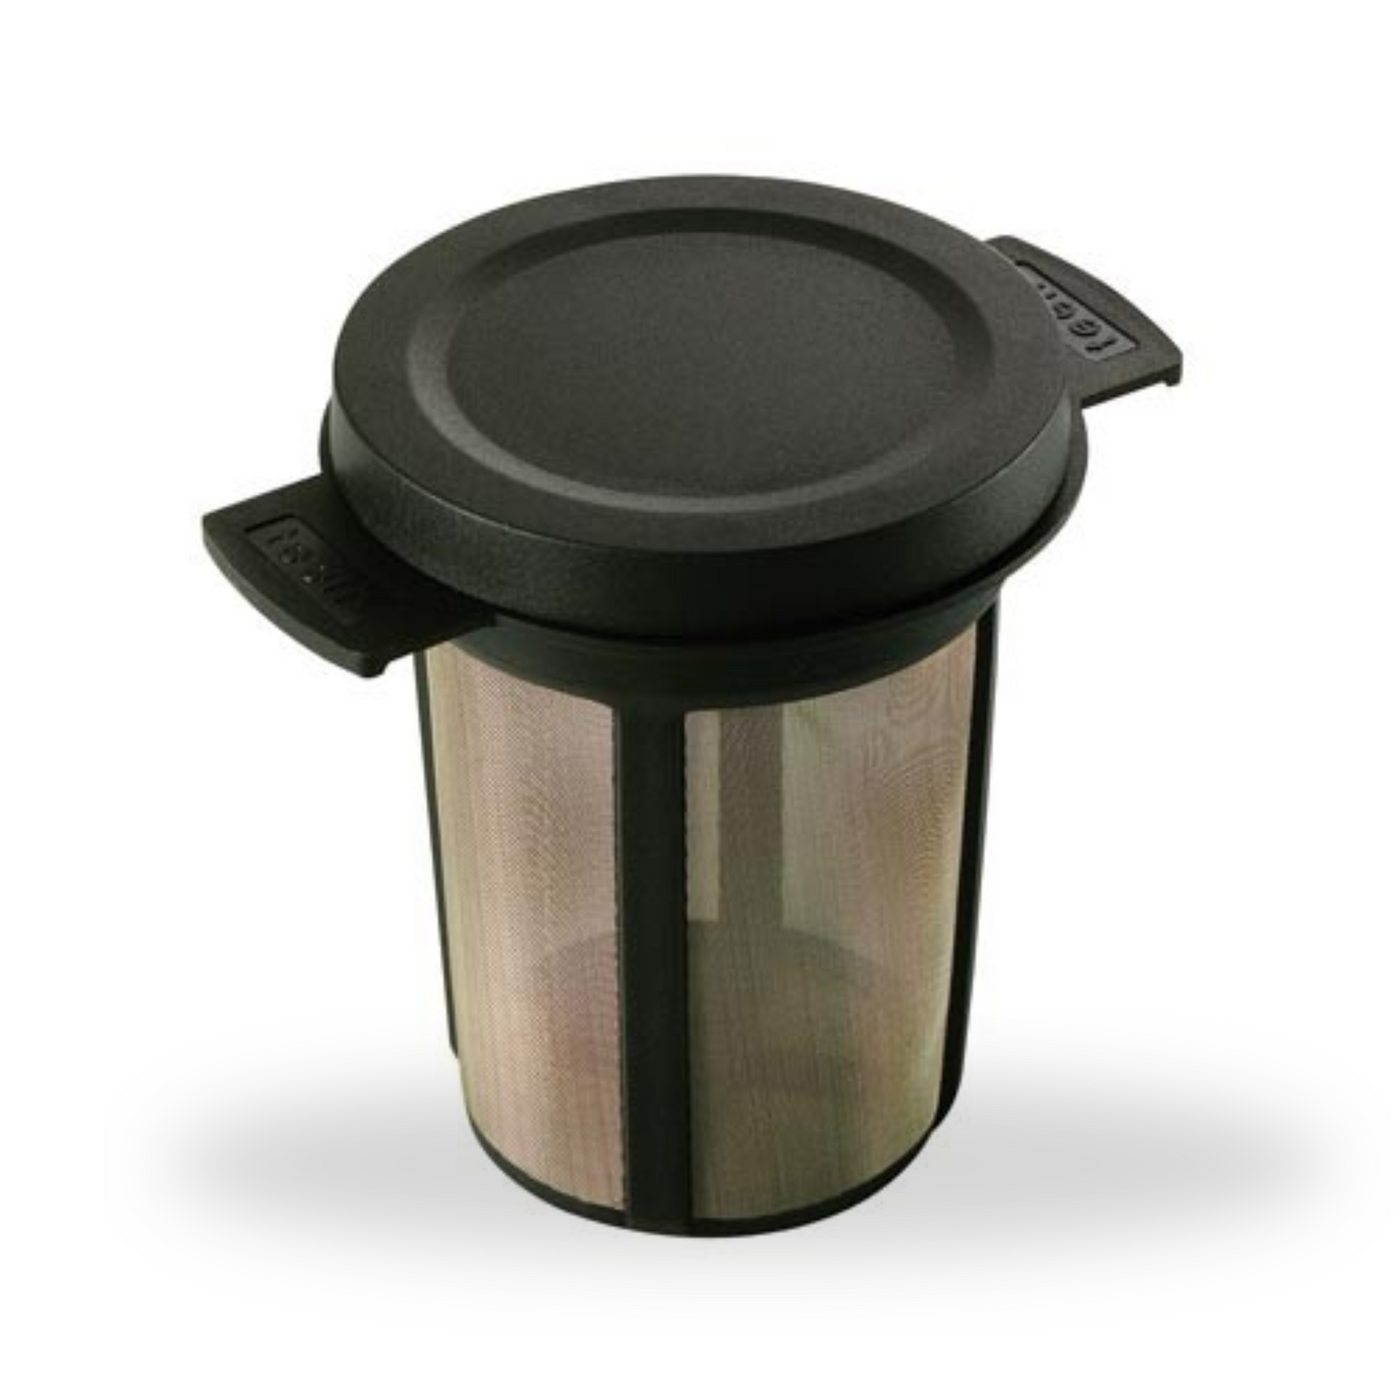 Tea strainer for mug